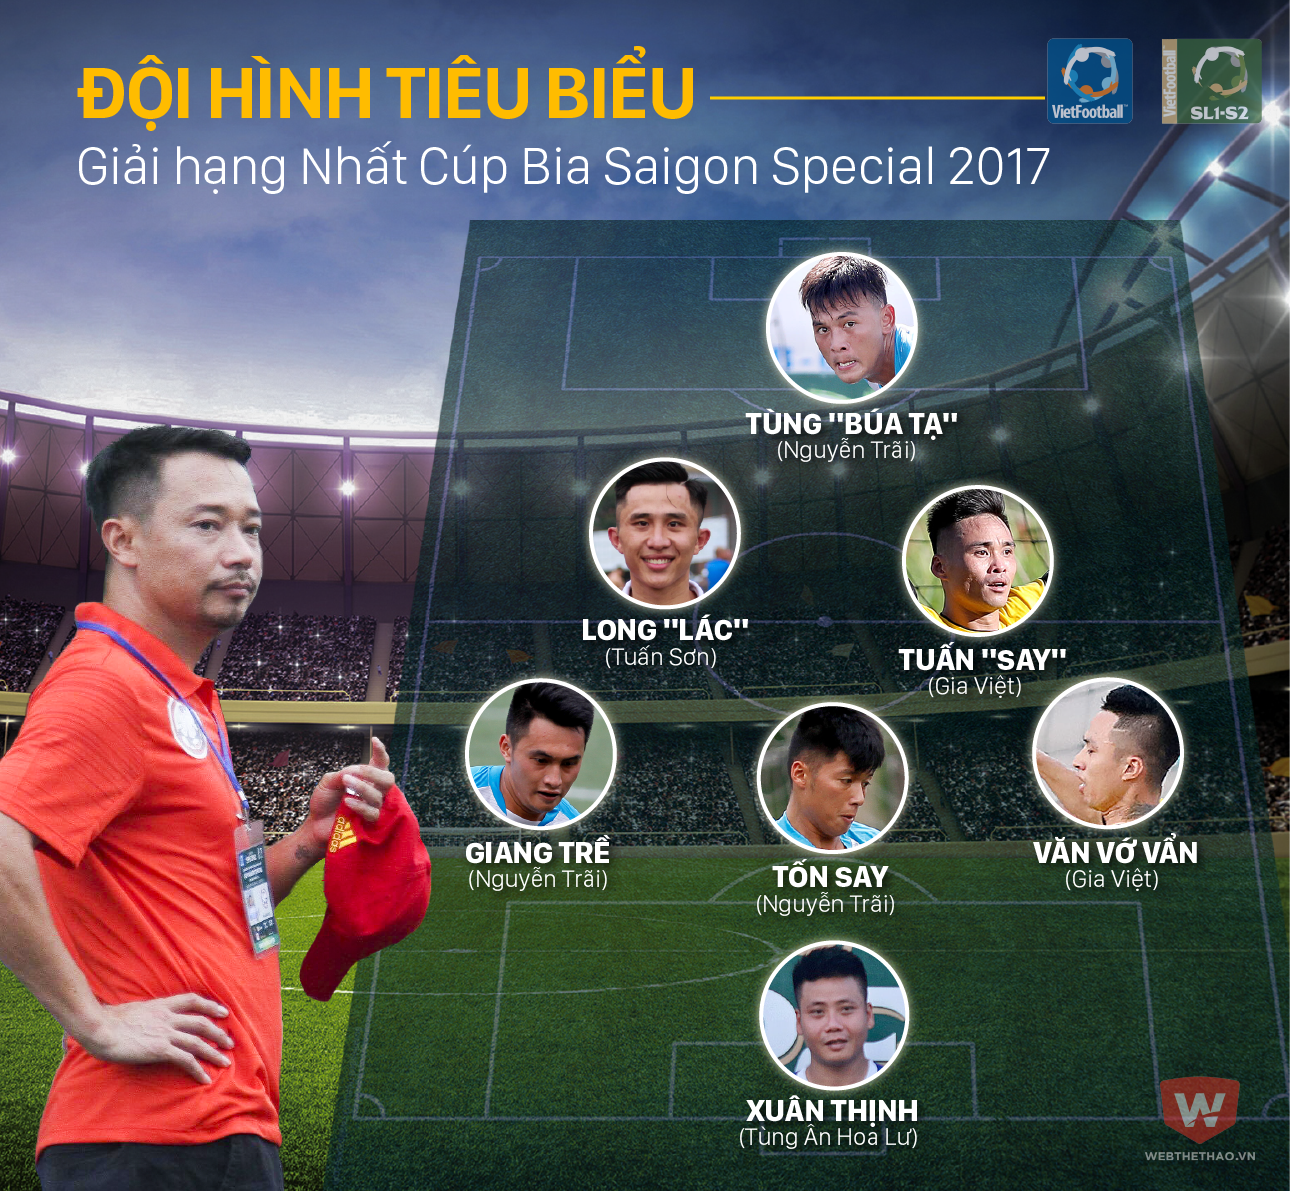 Đội hình tiêu biểu giải hạng Nhất Cúp Bia Saigon Special 2017 do Webthethao.vn bình chọn